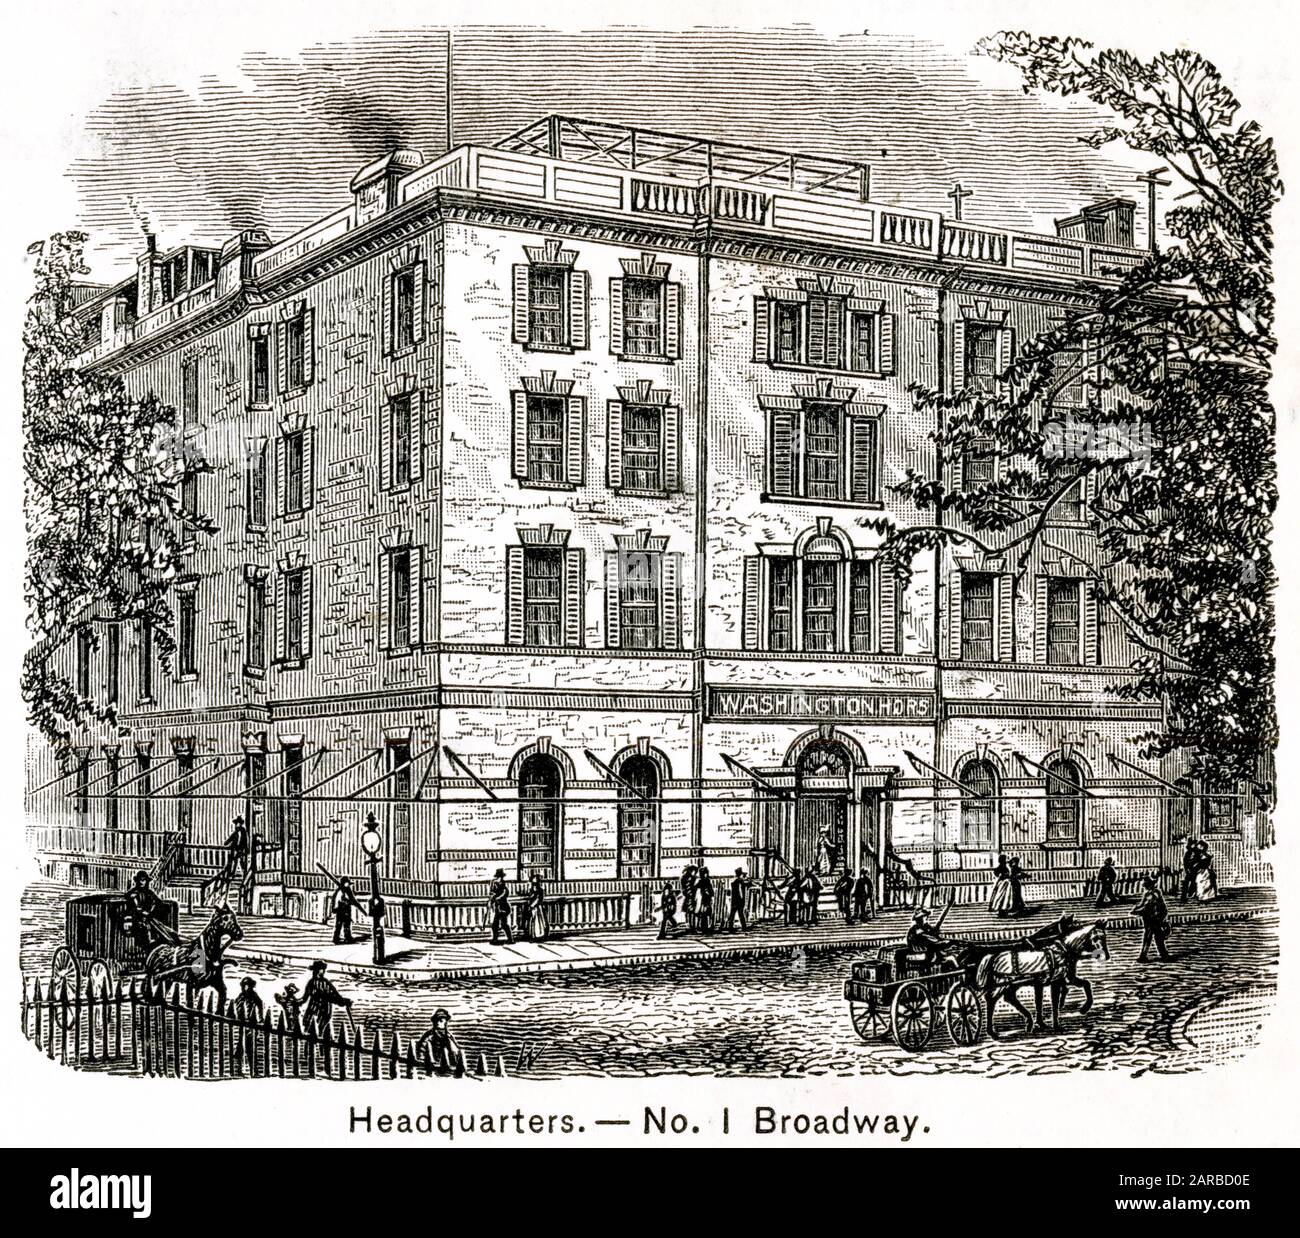 No.1 Broadway -House Utilisé Comme Siège Social À New York Pendant La Guerre D'Indépendance Américaine Date: 1776 Banque D'Images